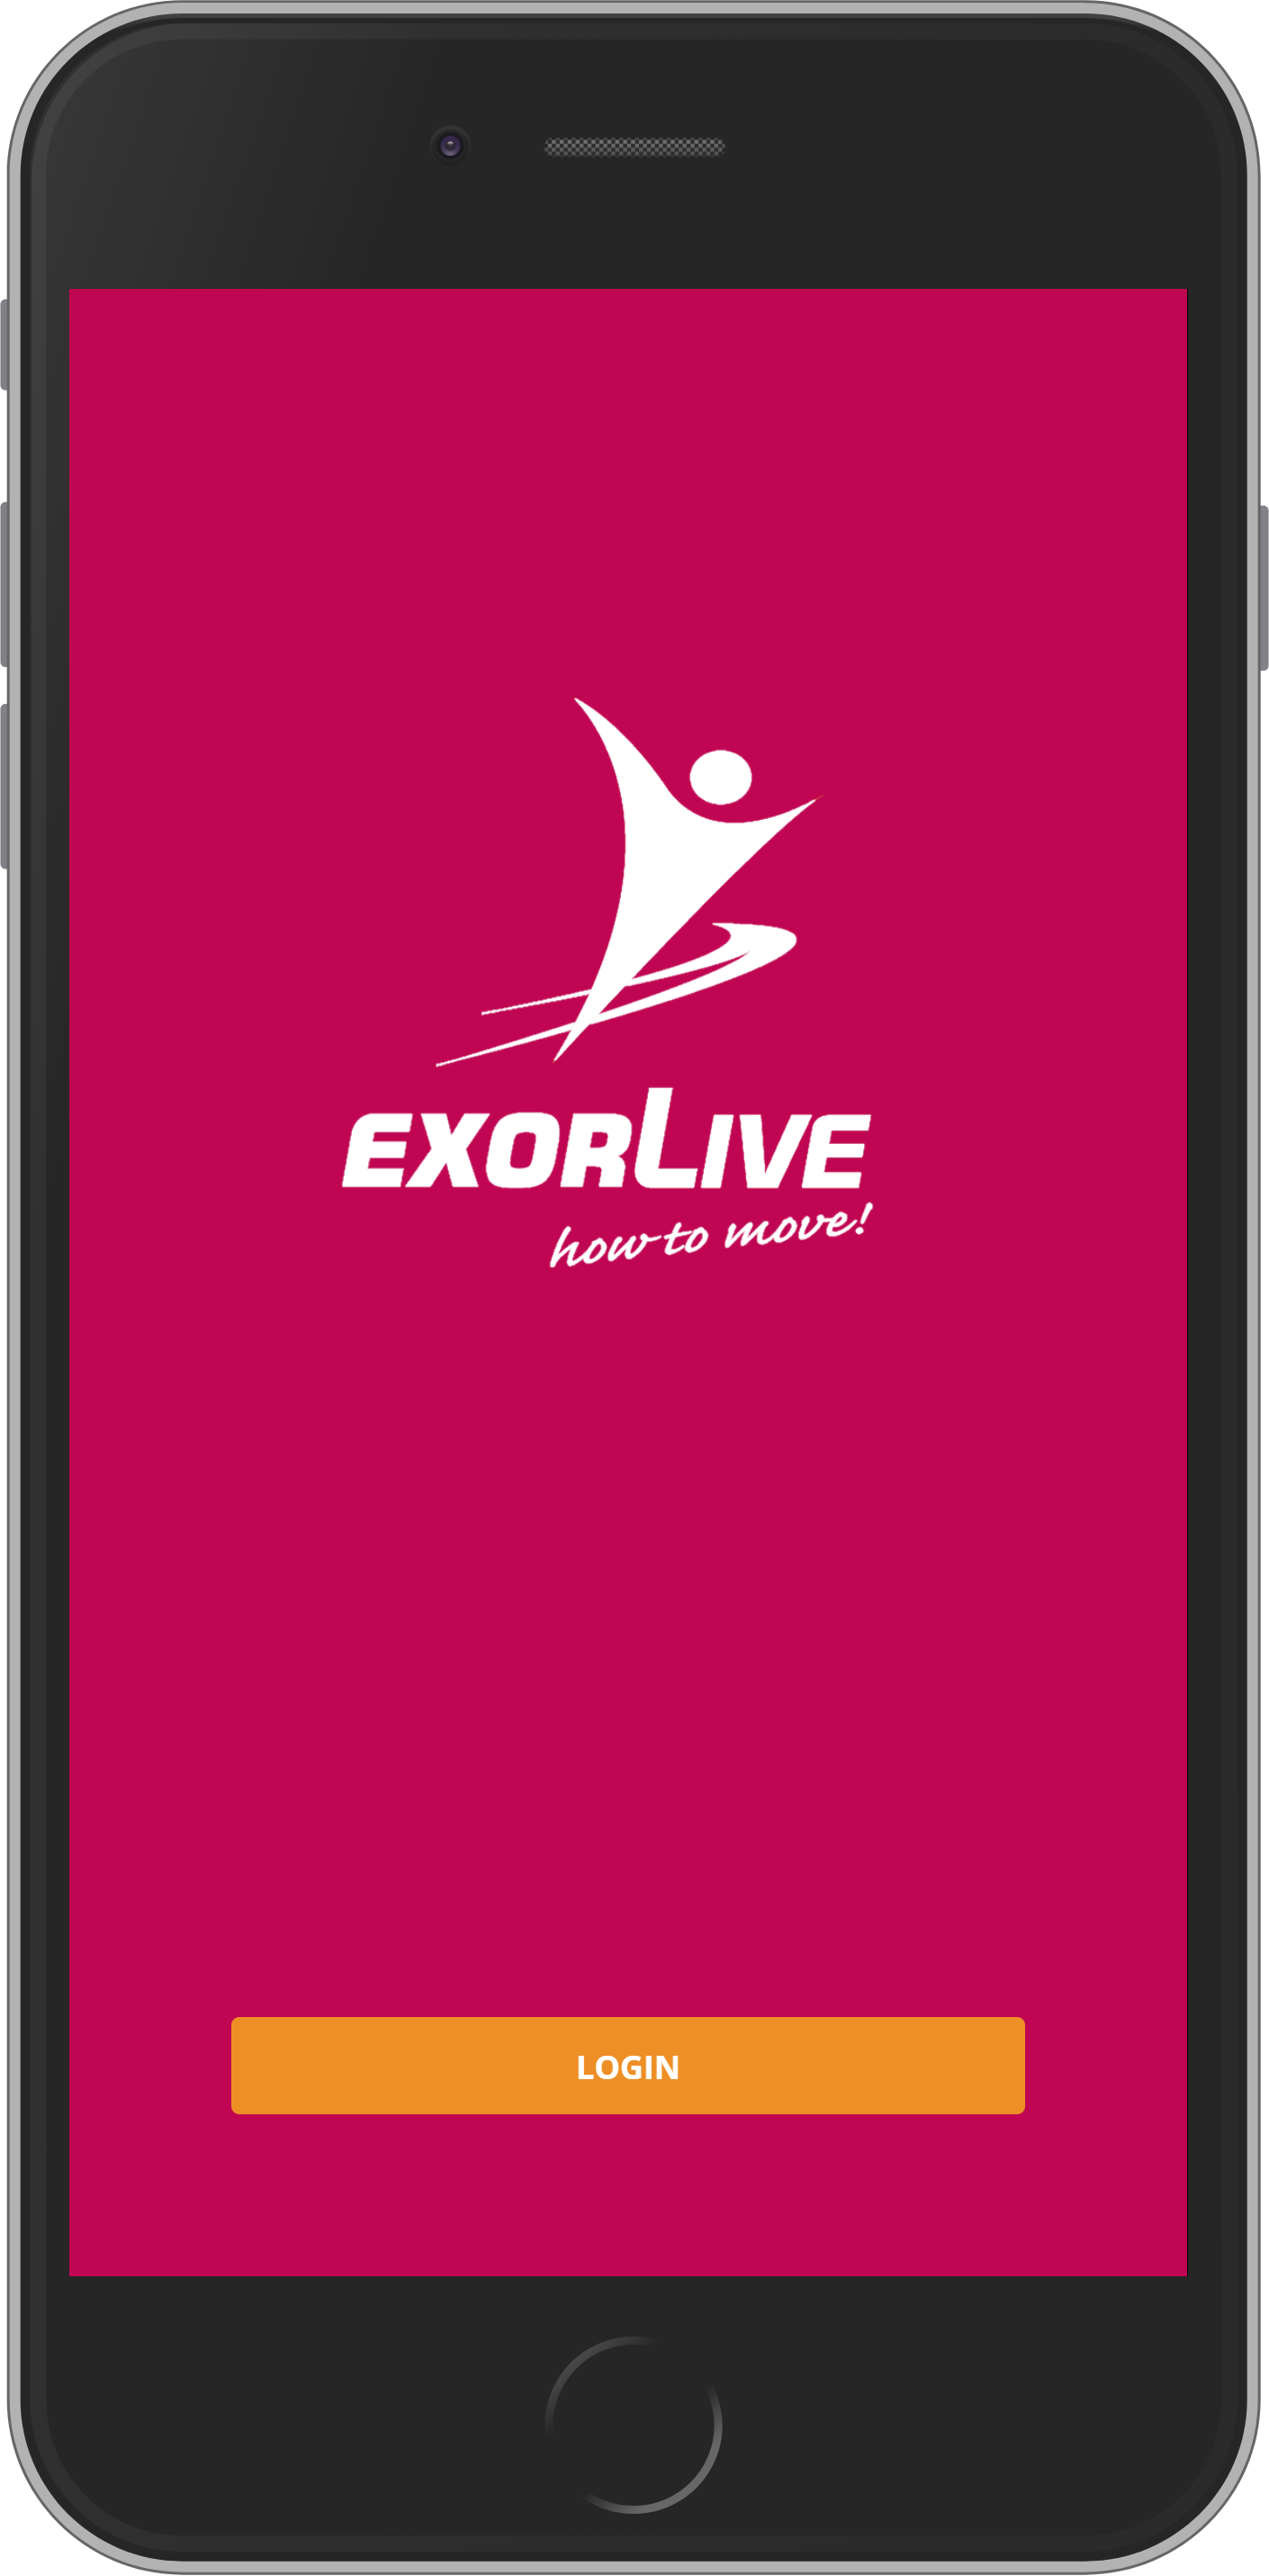 exorlive.com_m__skin_1c264e0f8015_iPhone_6_7_8_Plus___3_.png